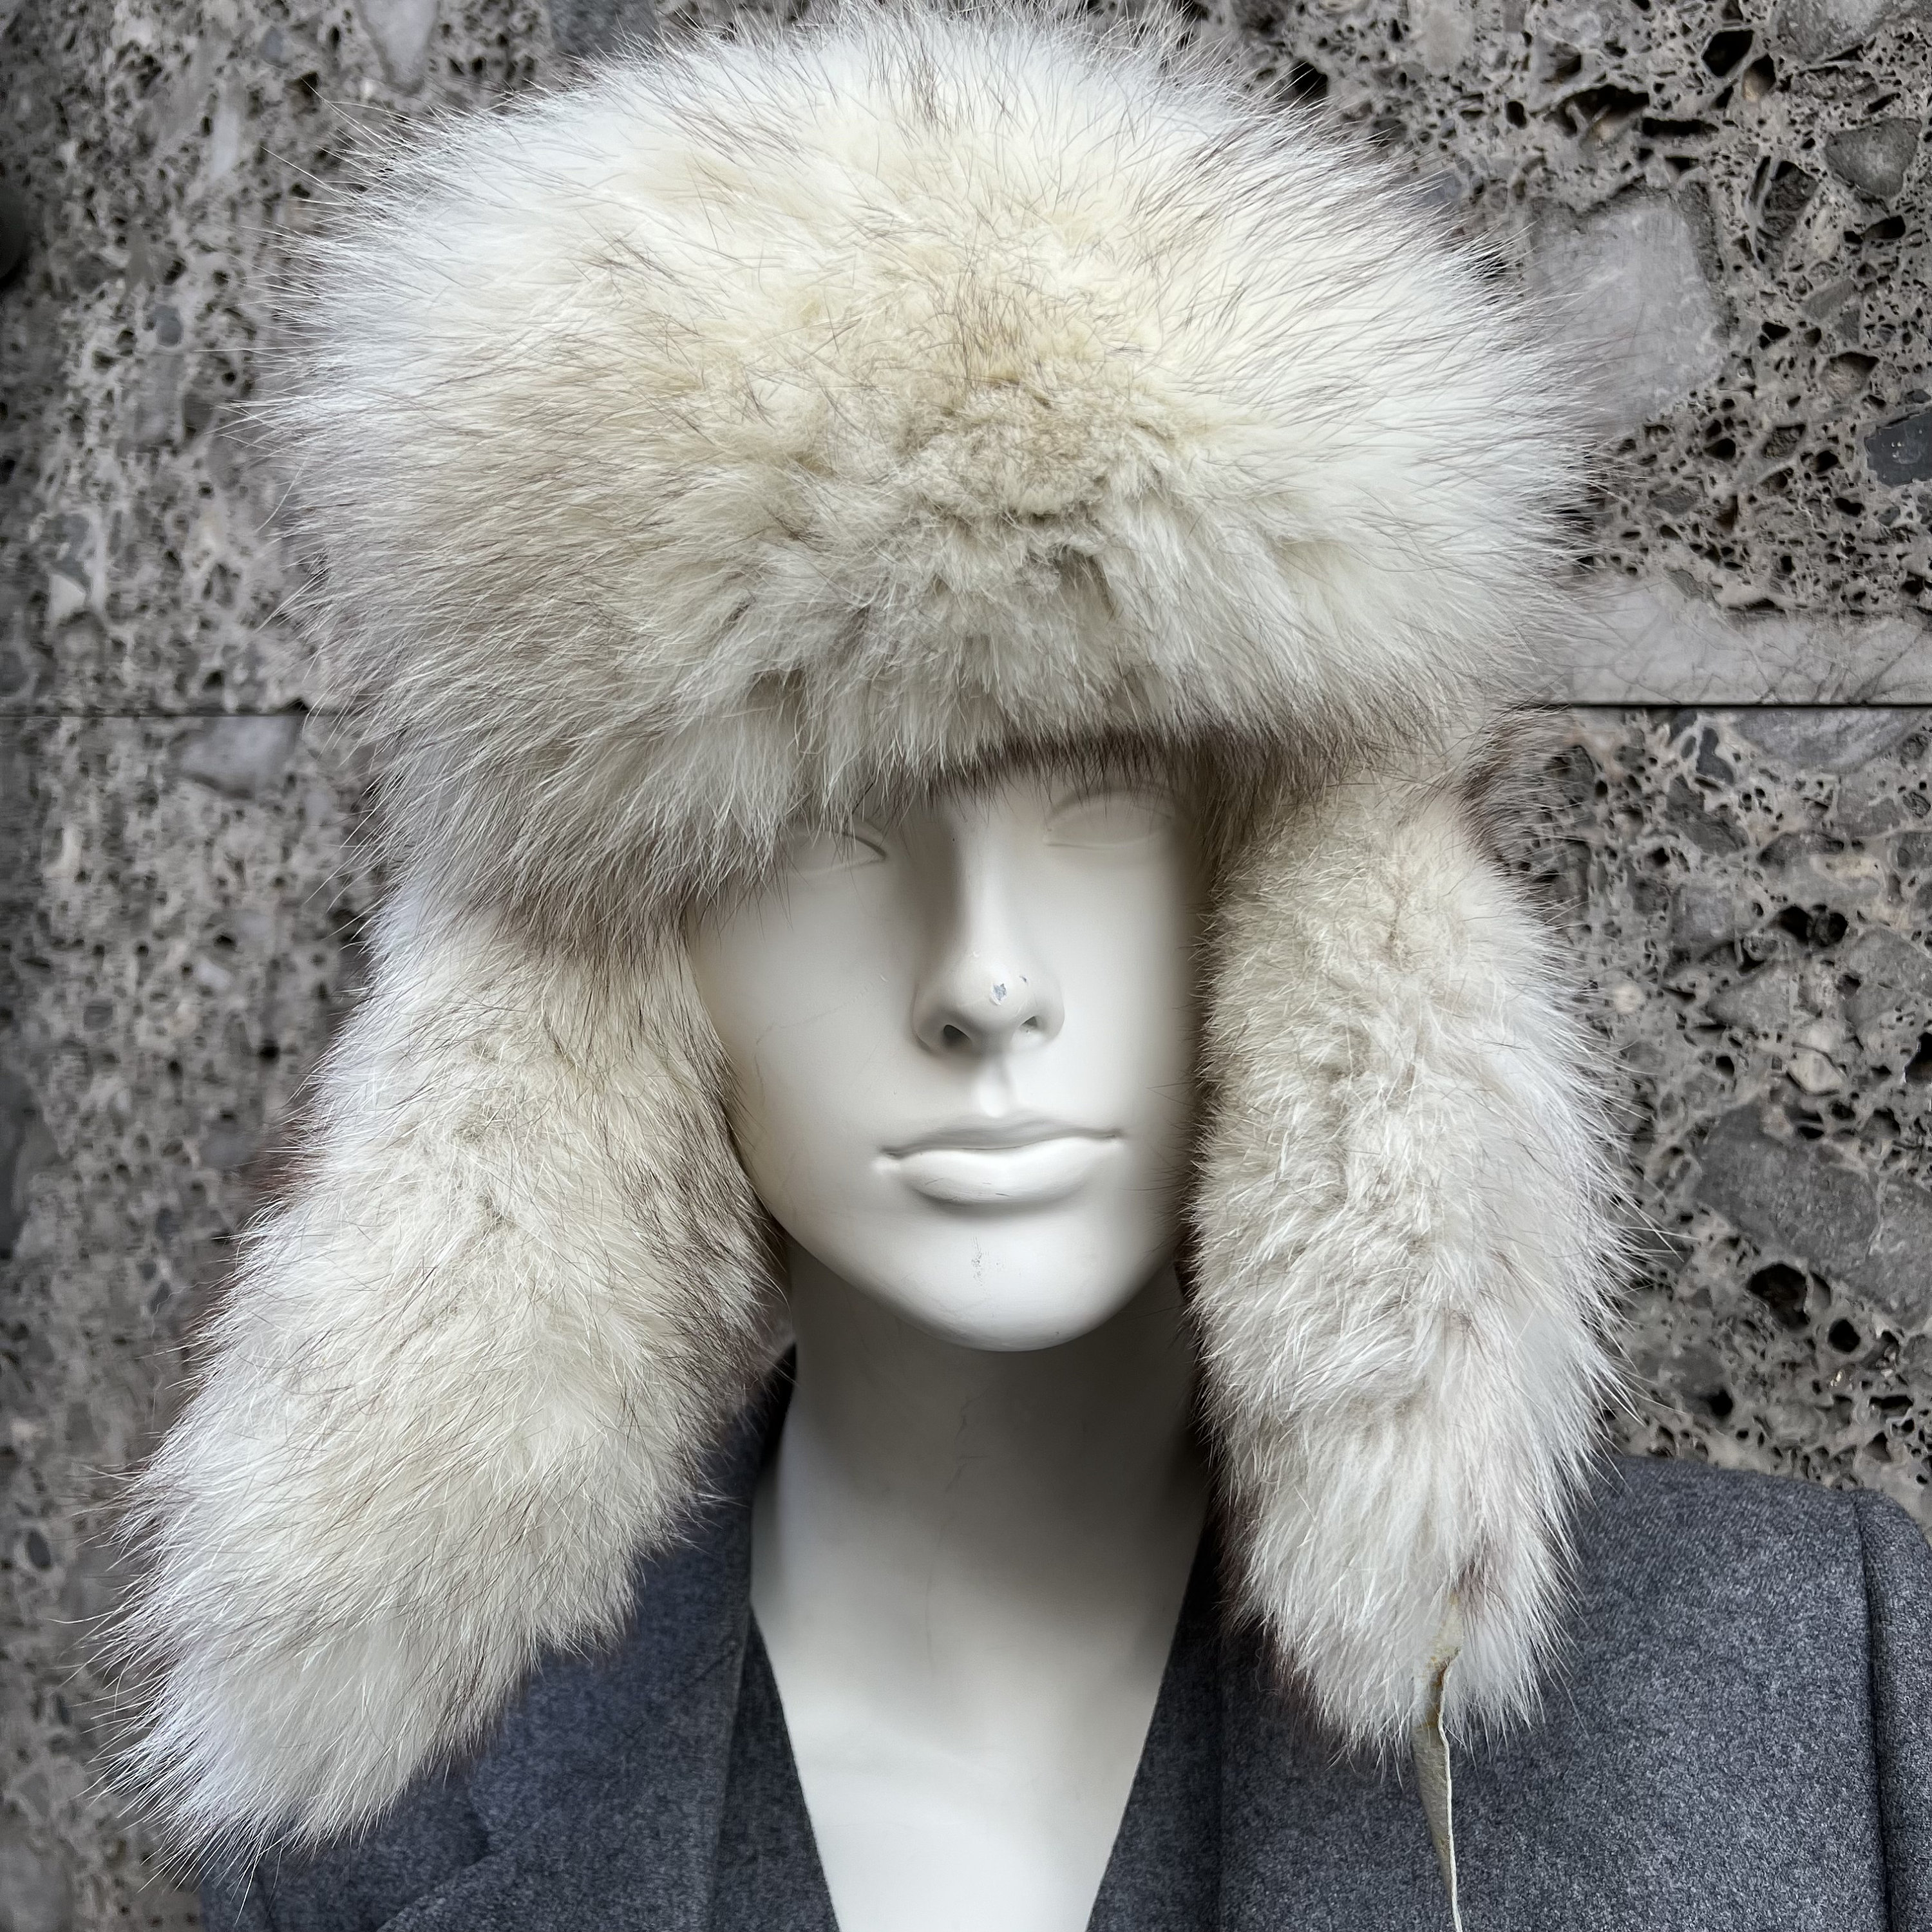 Trapper Hat Russian Ushanka Sherpa Cossack Fur Warm Winter Ski Showerproof